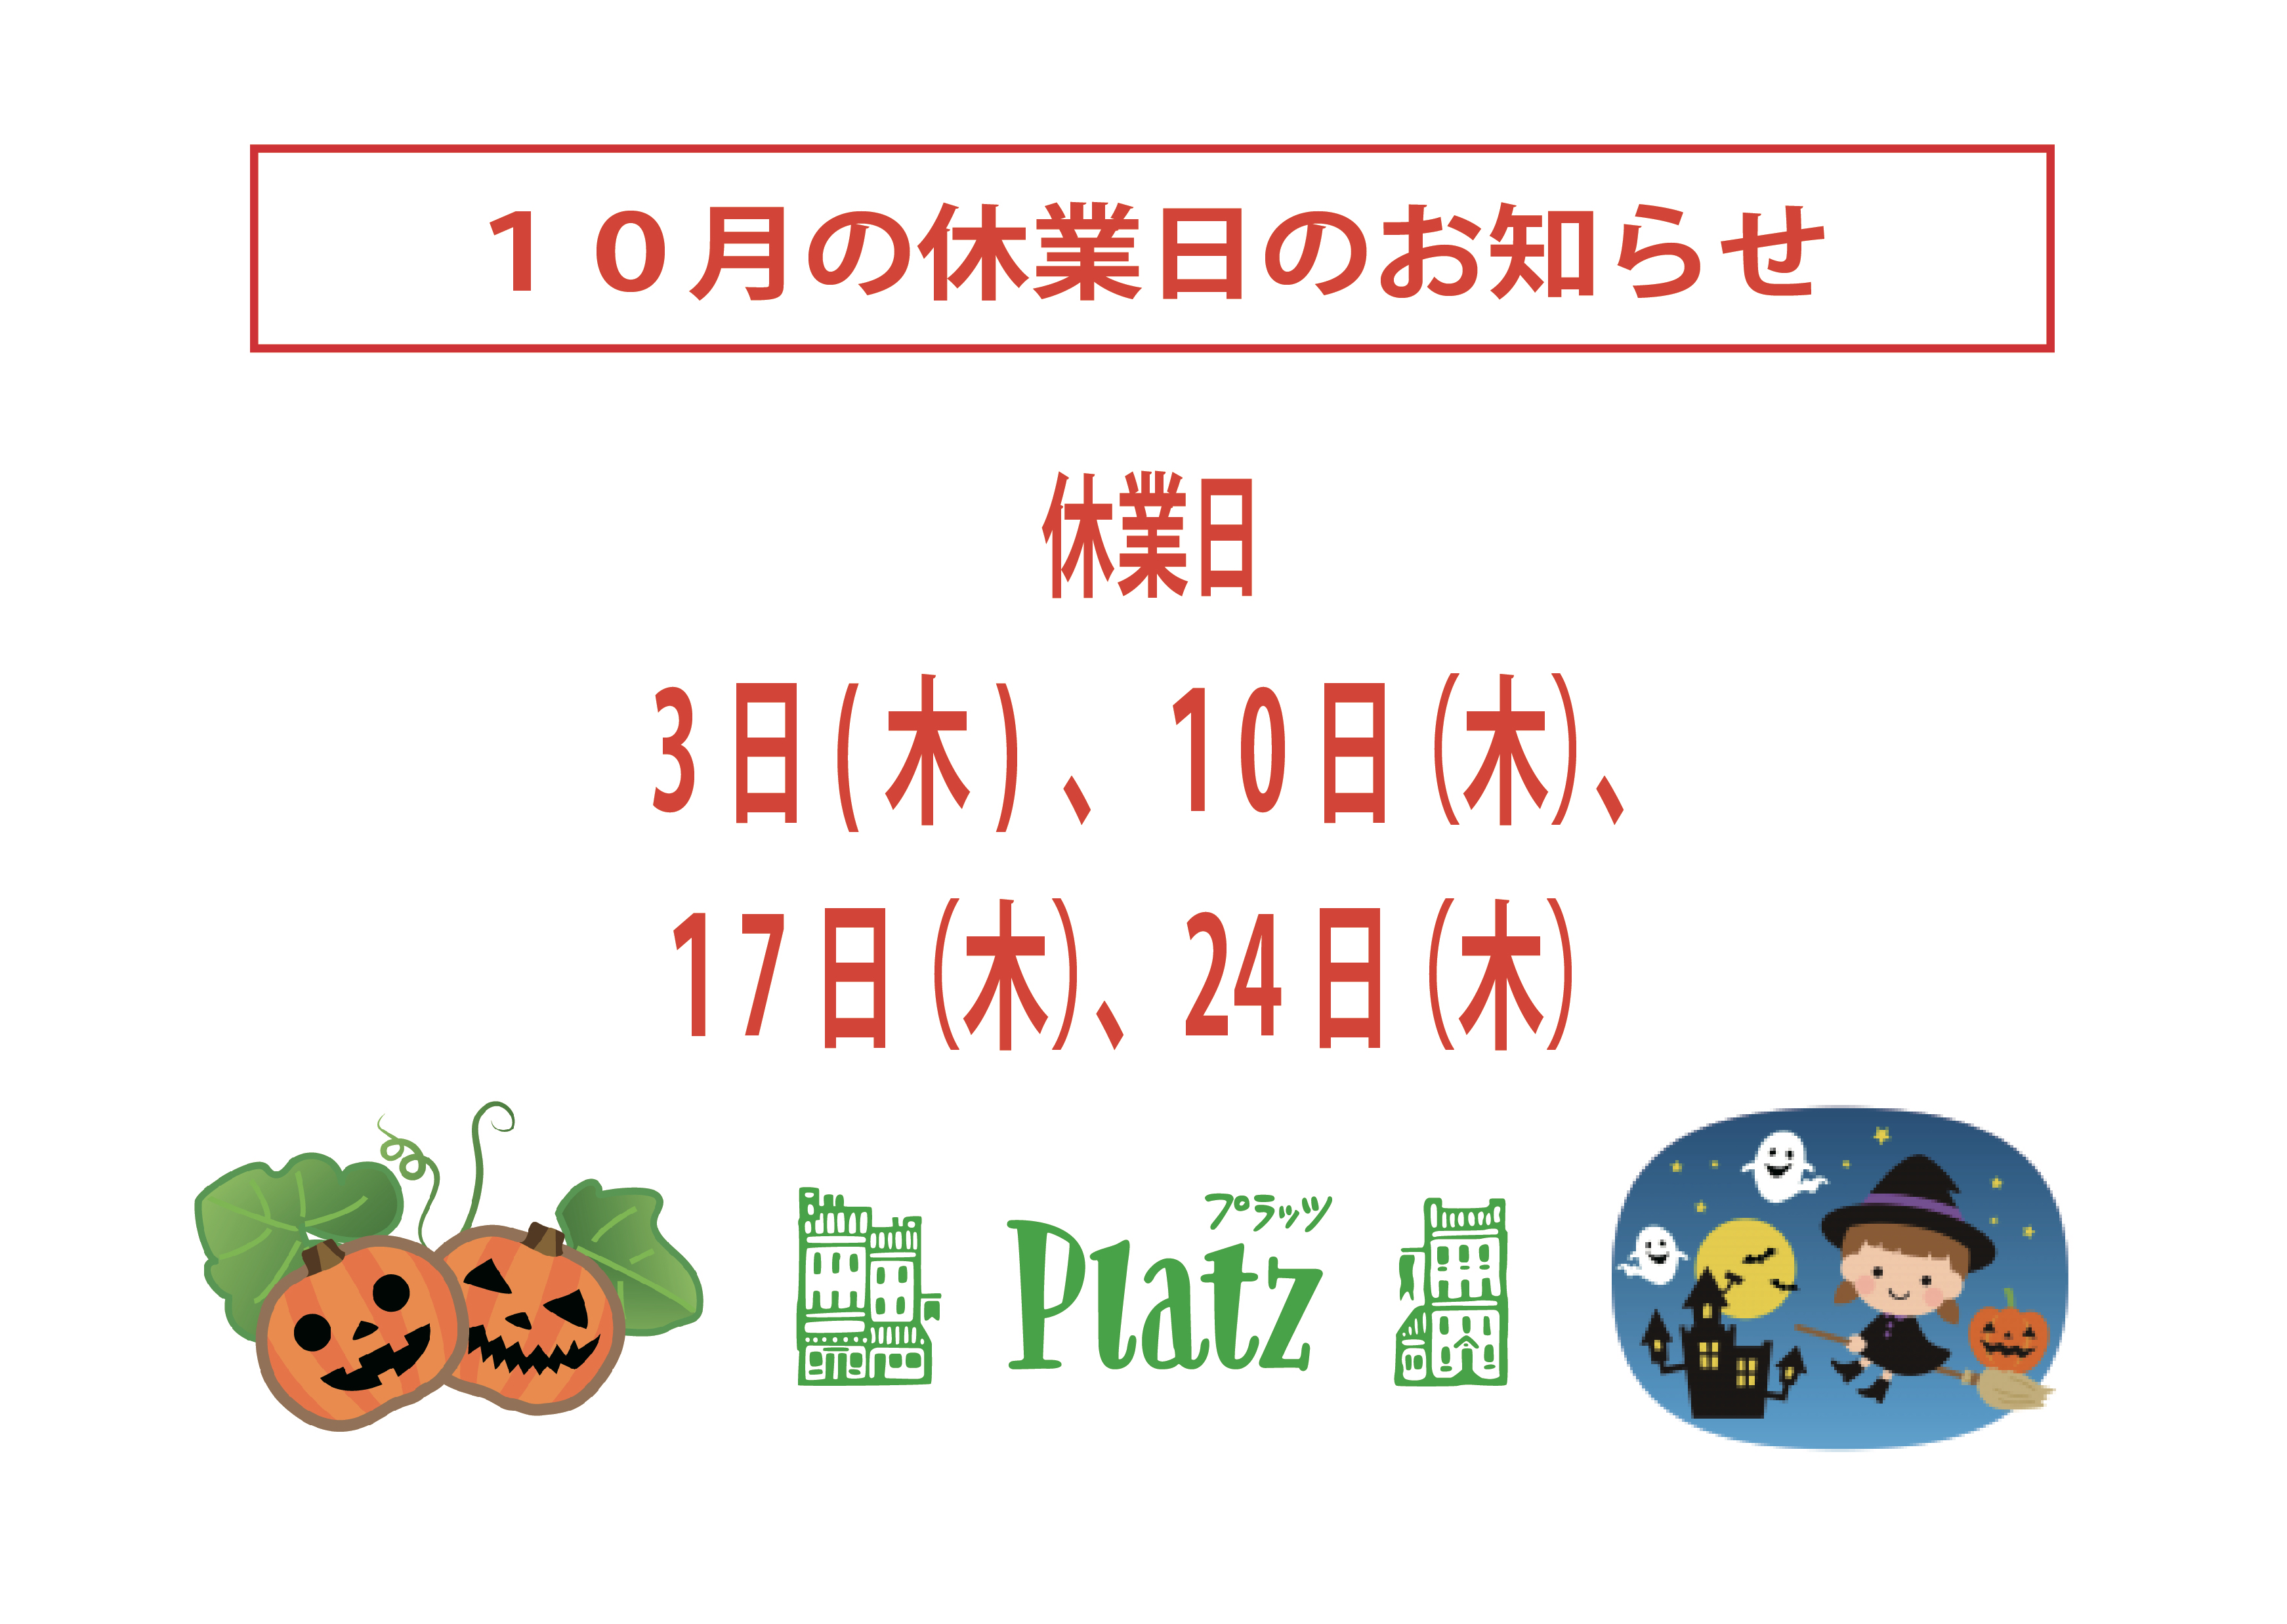 http://www.kyoto-platz.jp/news/images/2019.10%E6%9C%88%E4%BC%91%E6%A5%AD%E6%97%A5.jpg